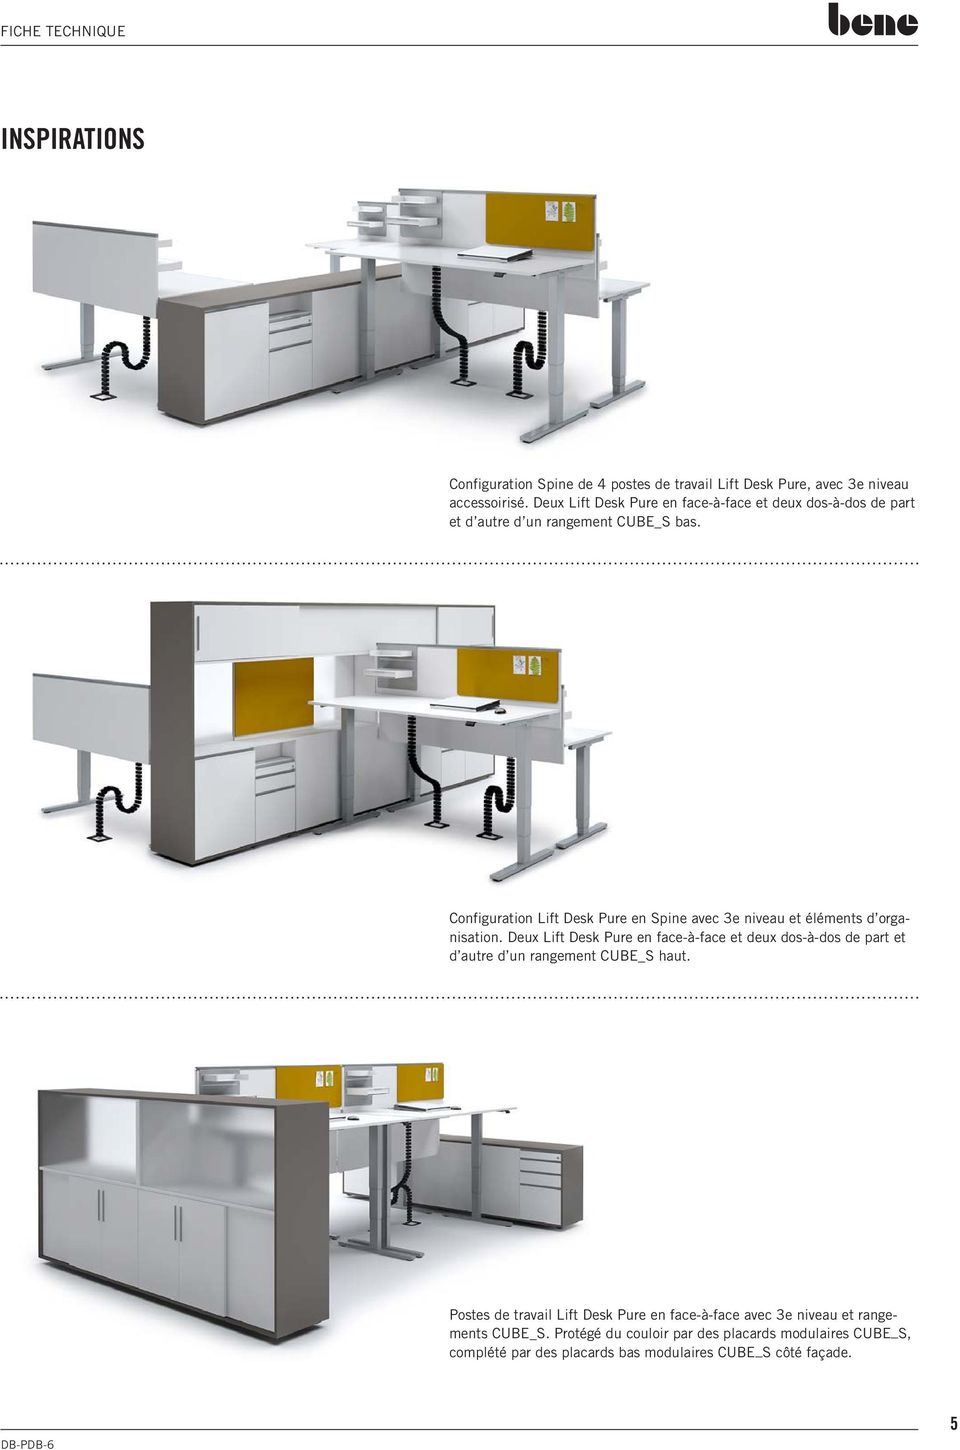 Configuration Lift Desk Pure en Spine avec e niveau et éléments d organisation.